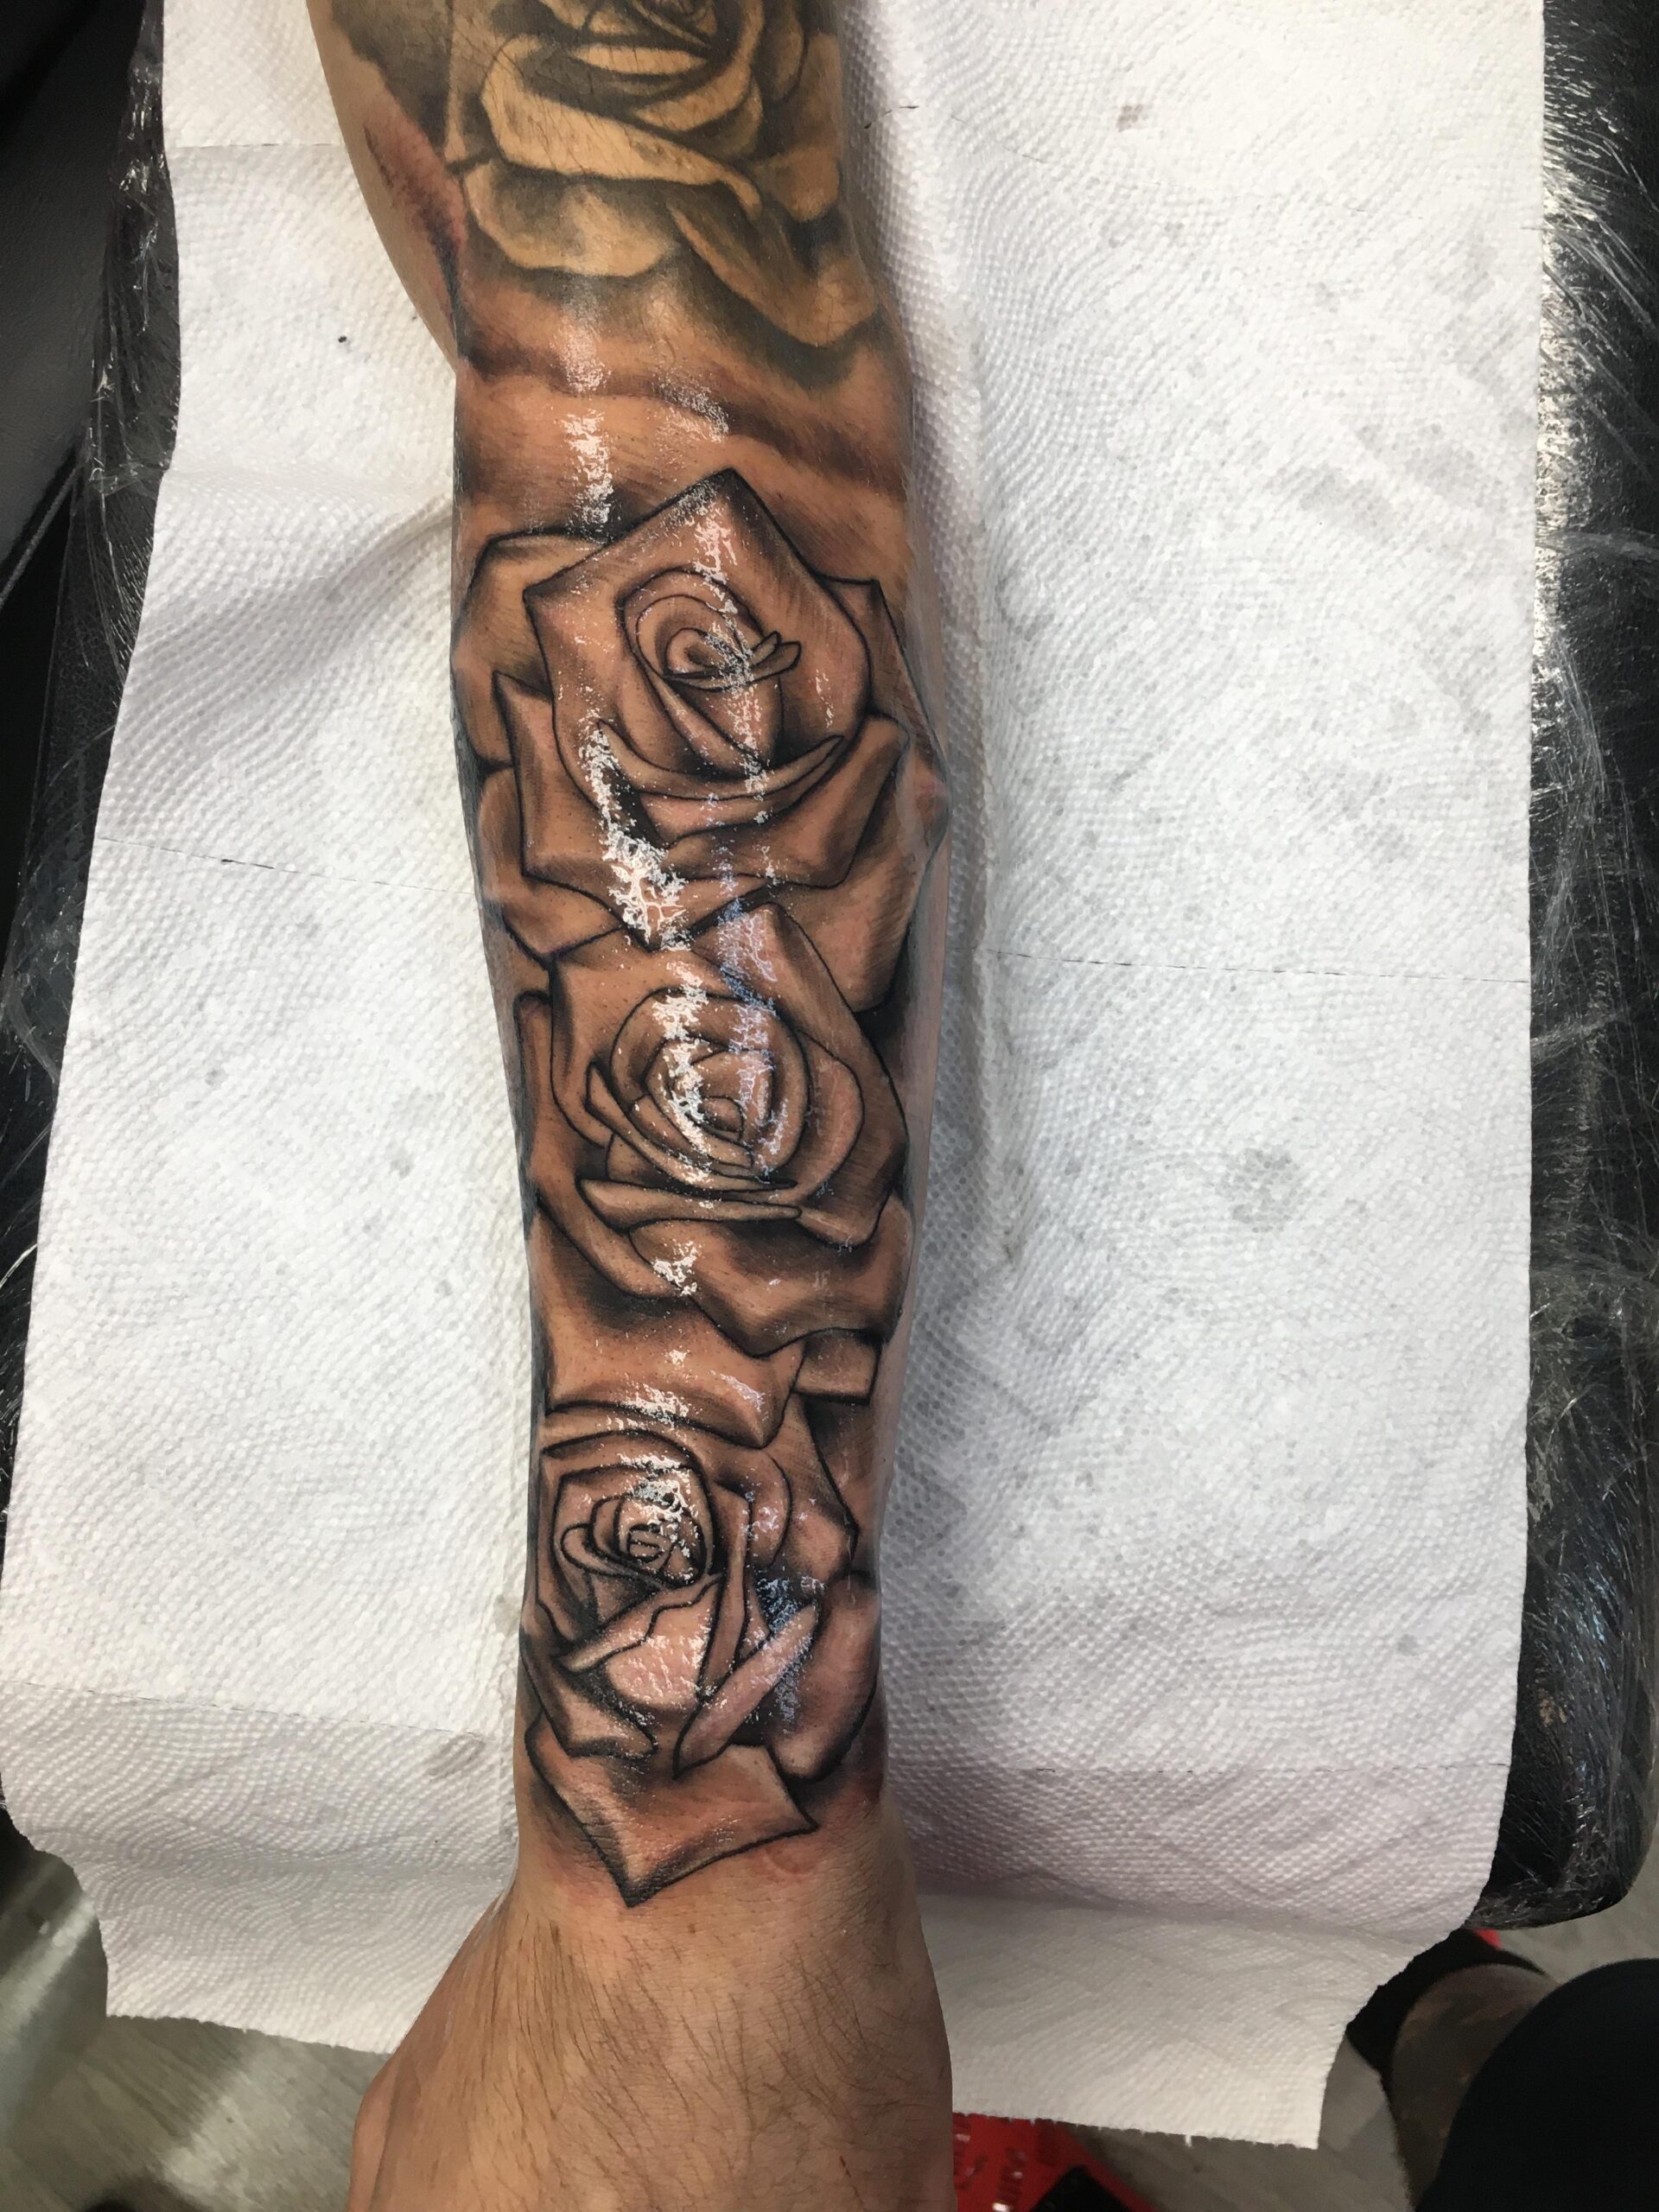 Rose Sleeve Tattoo Ideas - Body Tattoo Art